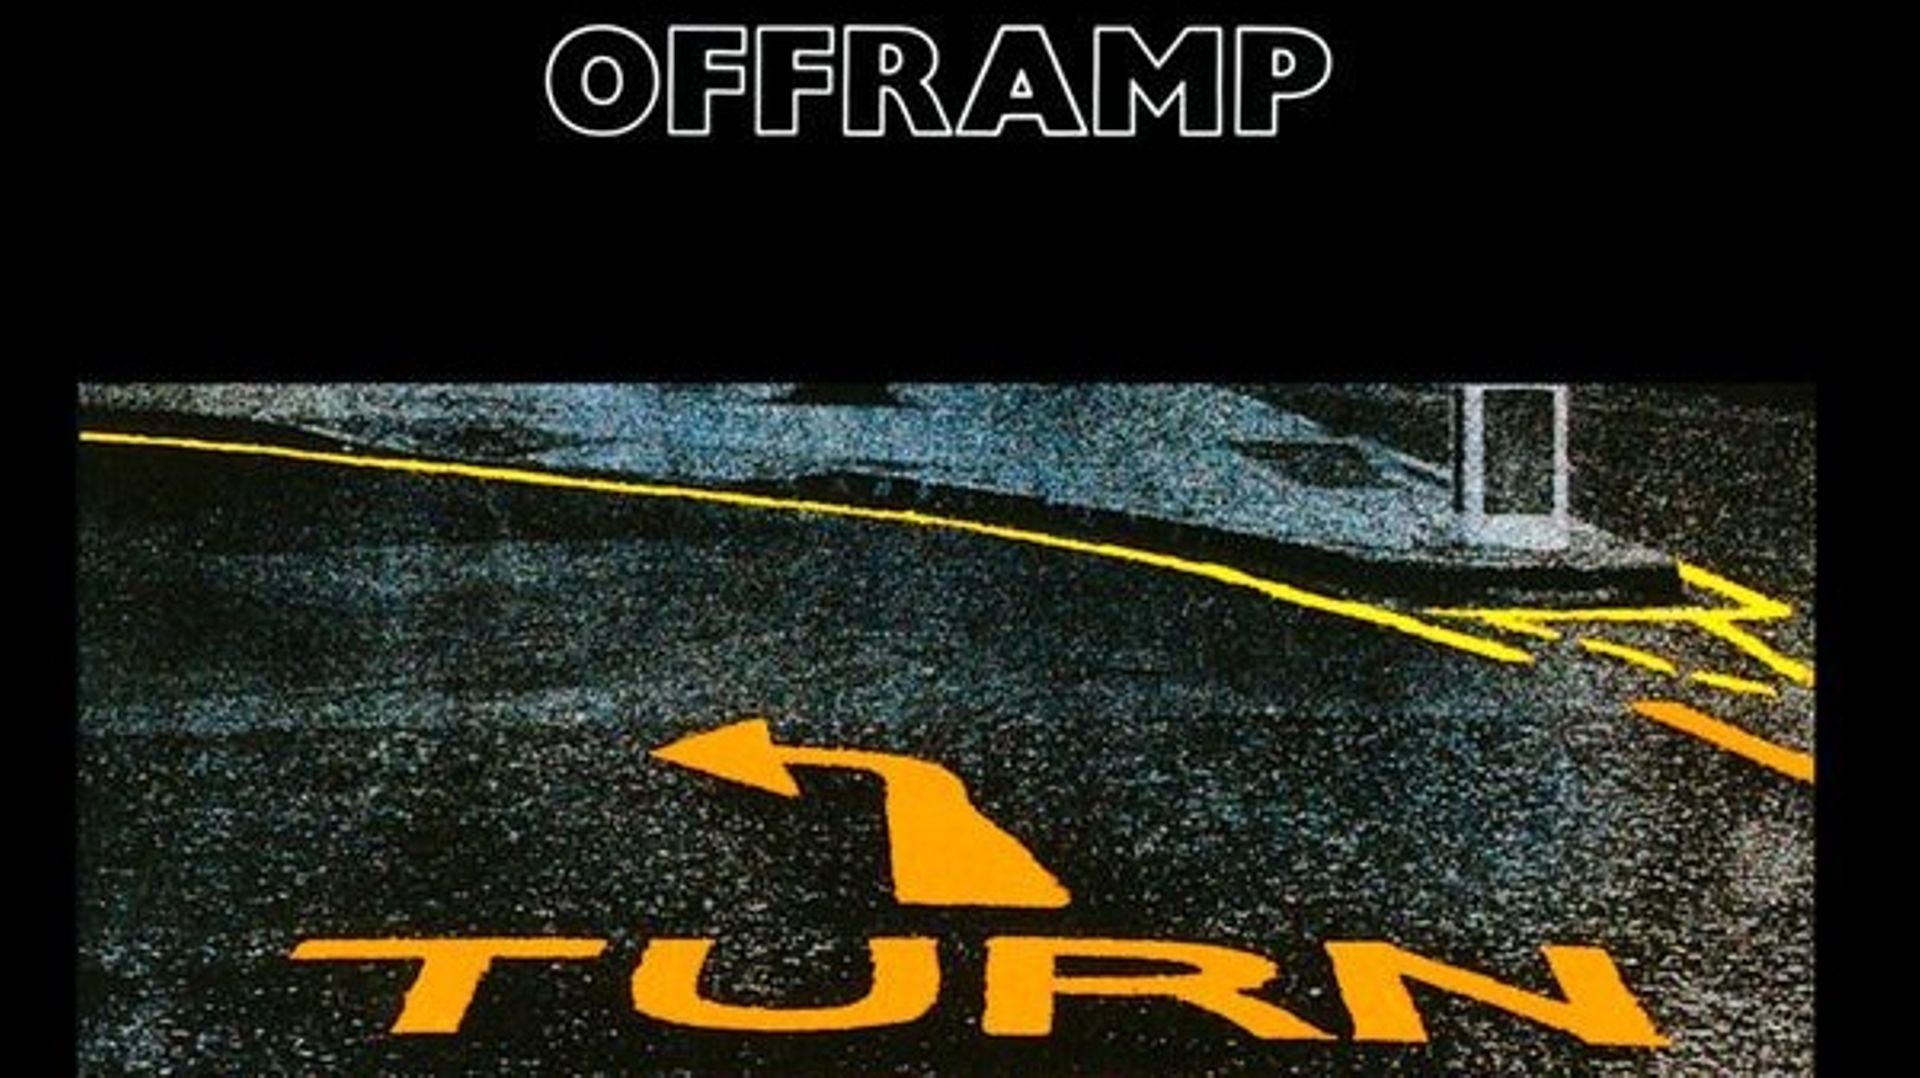 Il y a 40 ans s’enregistrait l’album "Offramp" du Pat Metheny Group